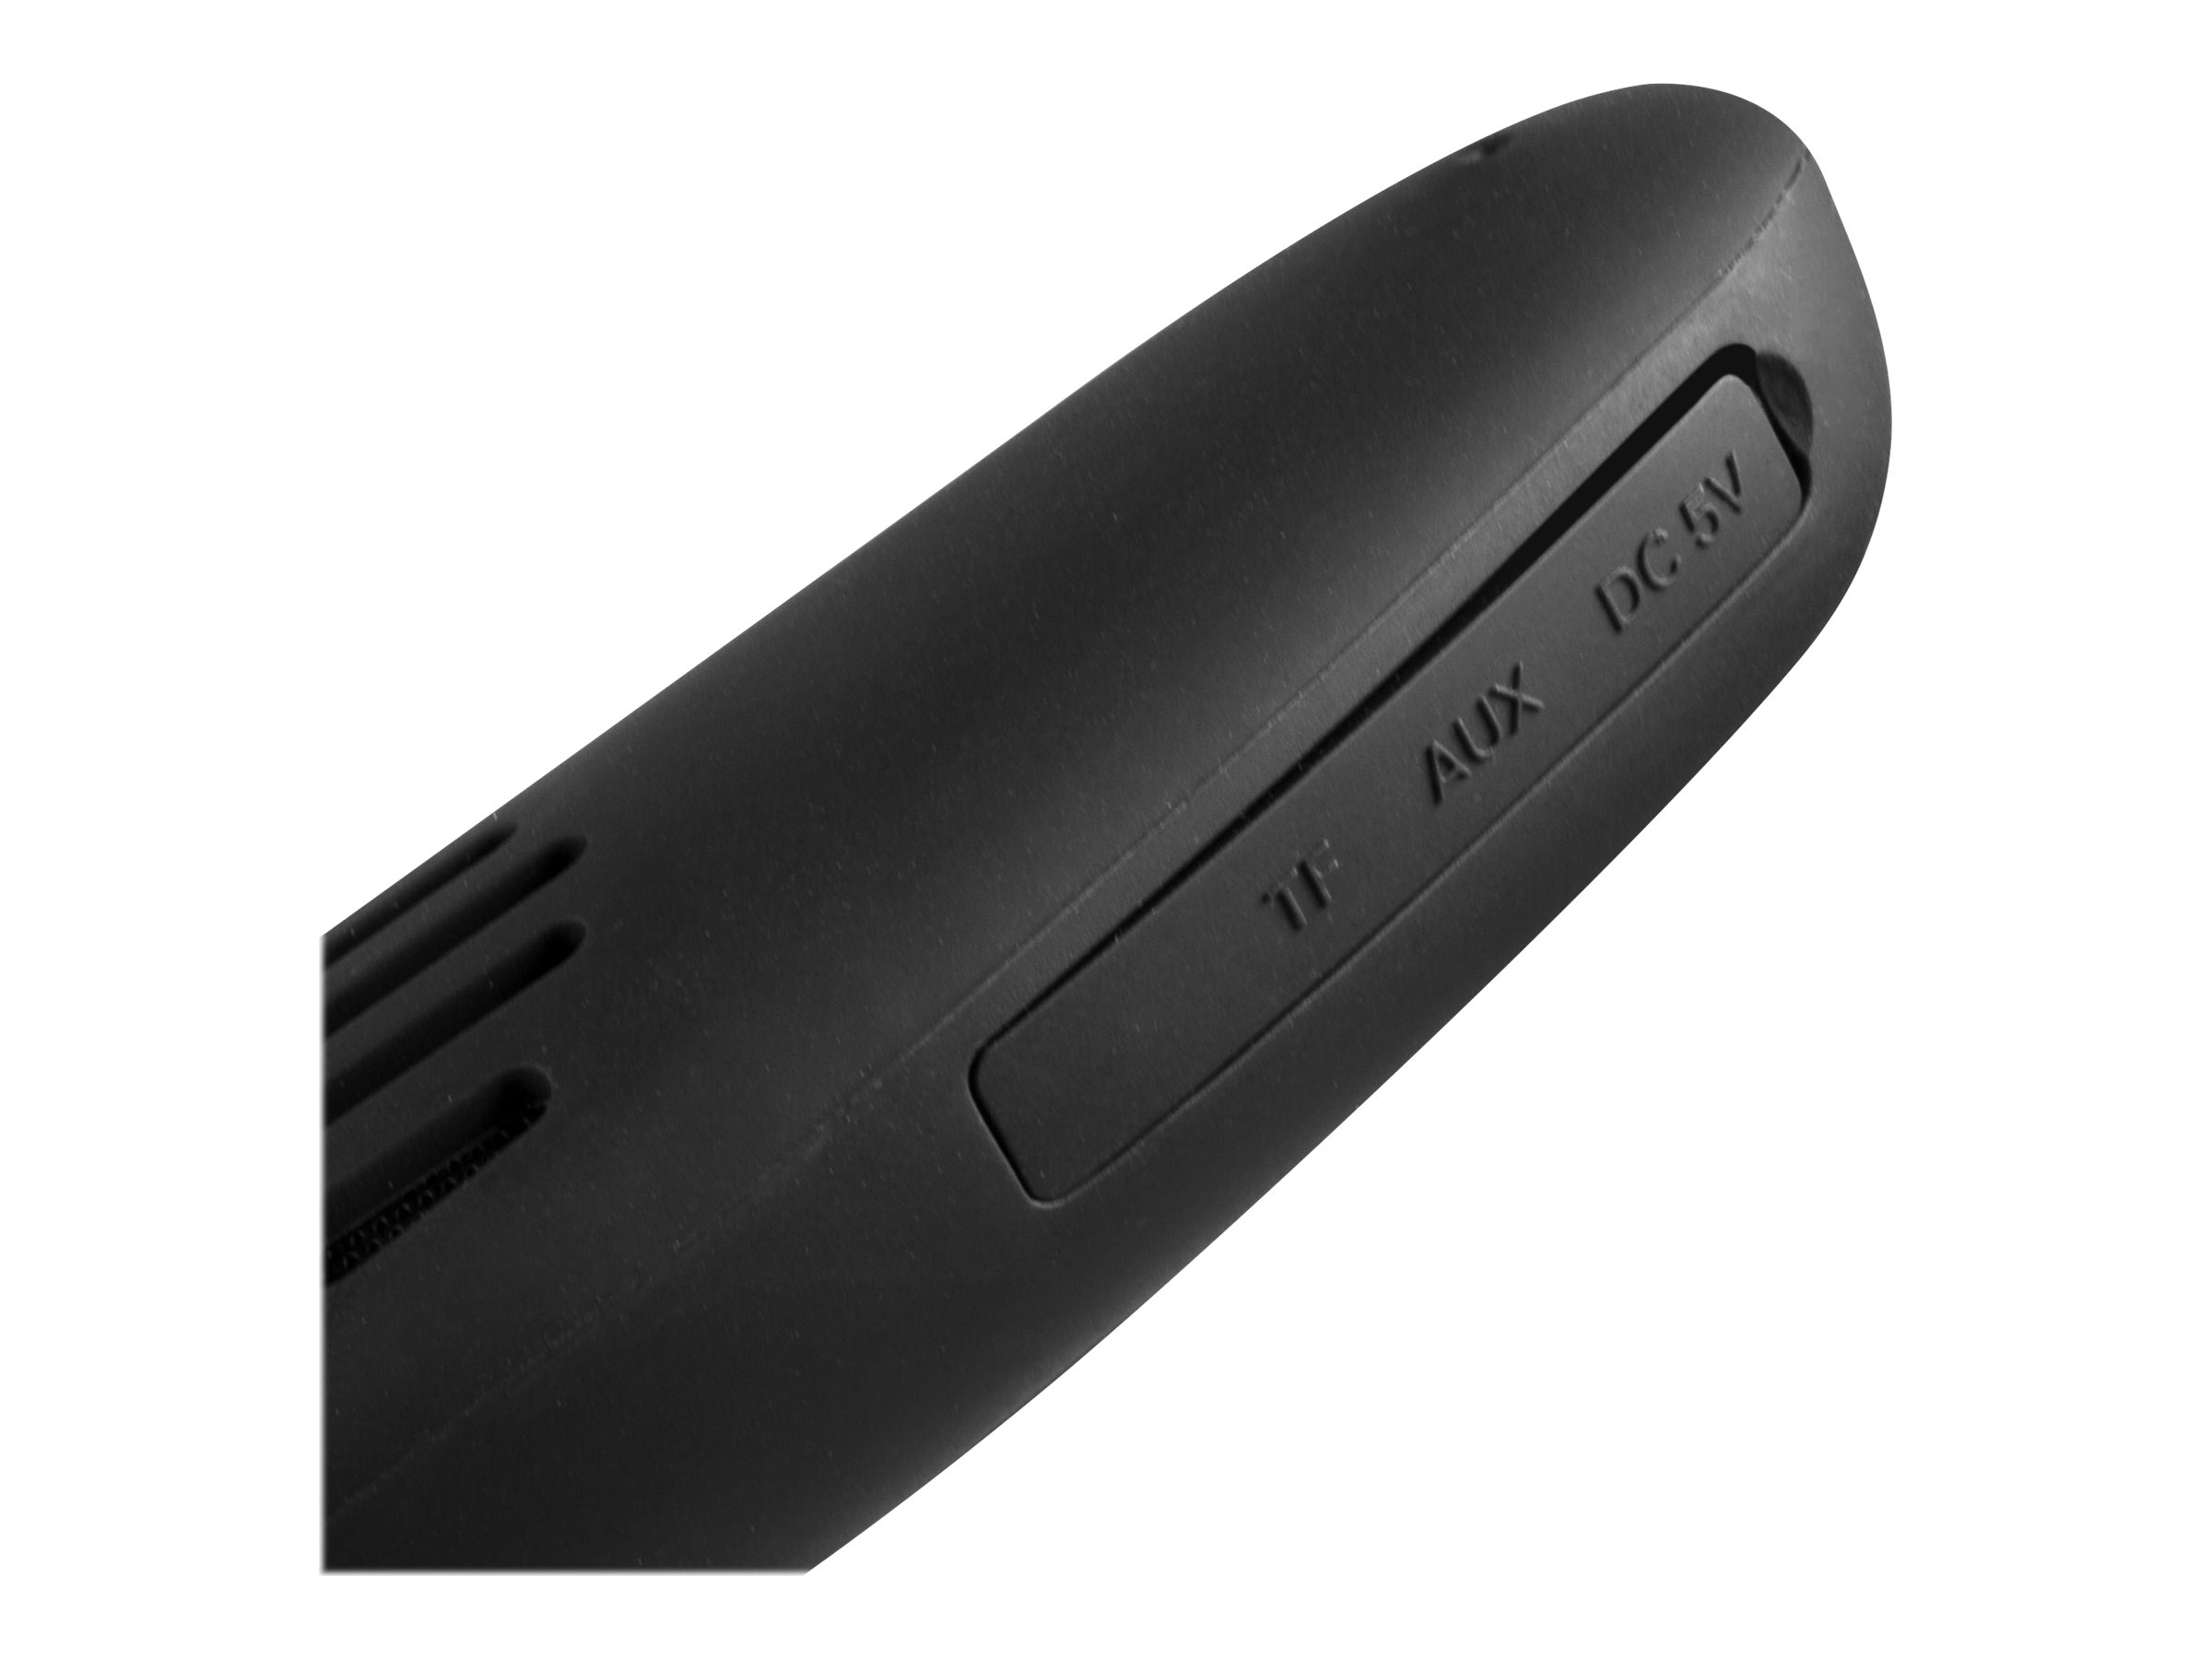 Technaxx MusicMan - Nackenlautsprecher - tragbar - Bluetooth - 6 Watt (Gesamt)